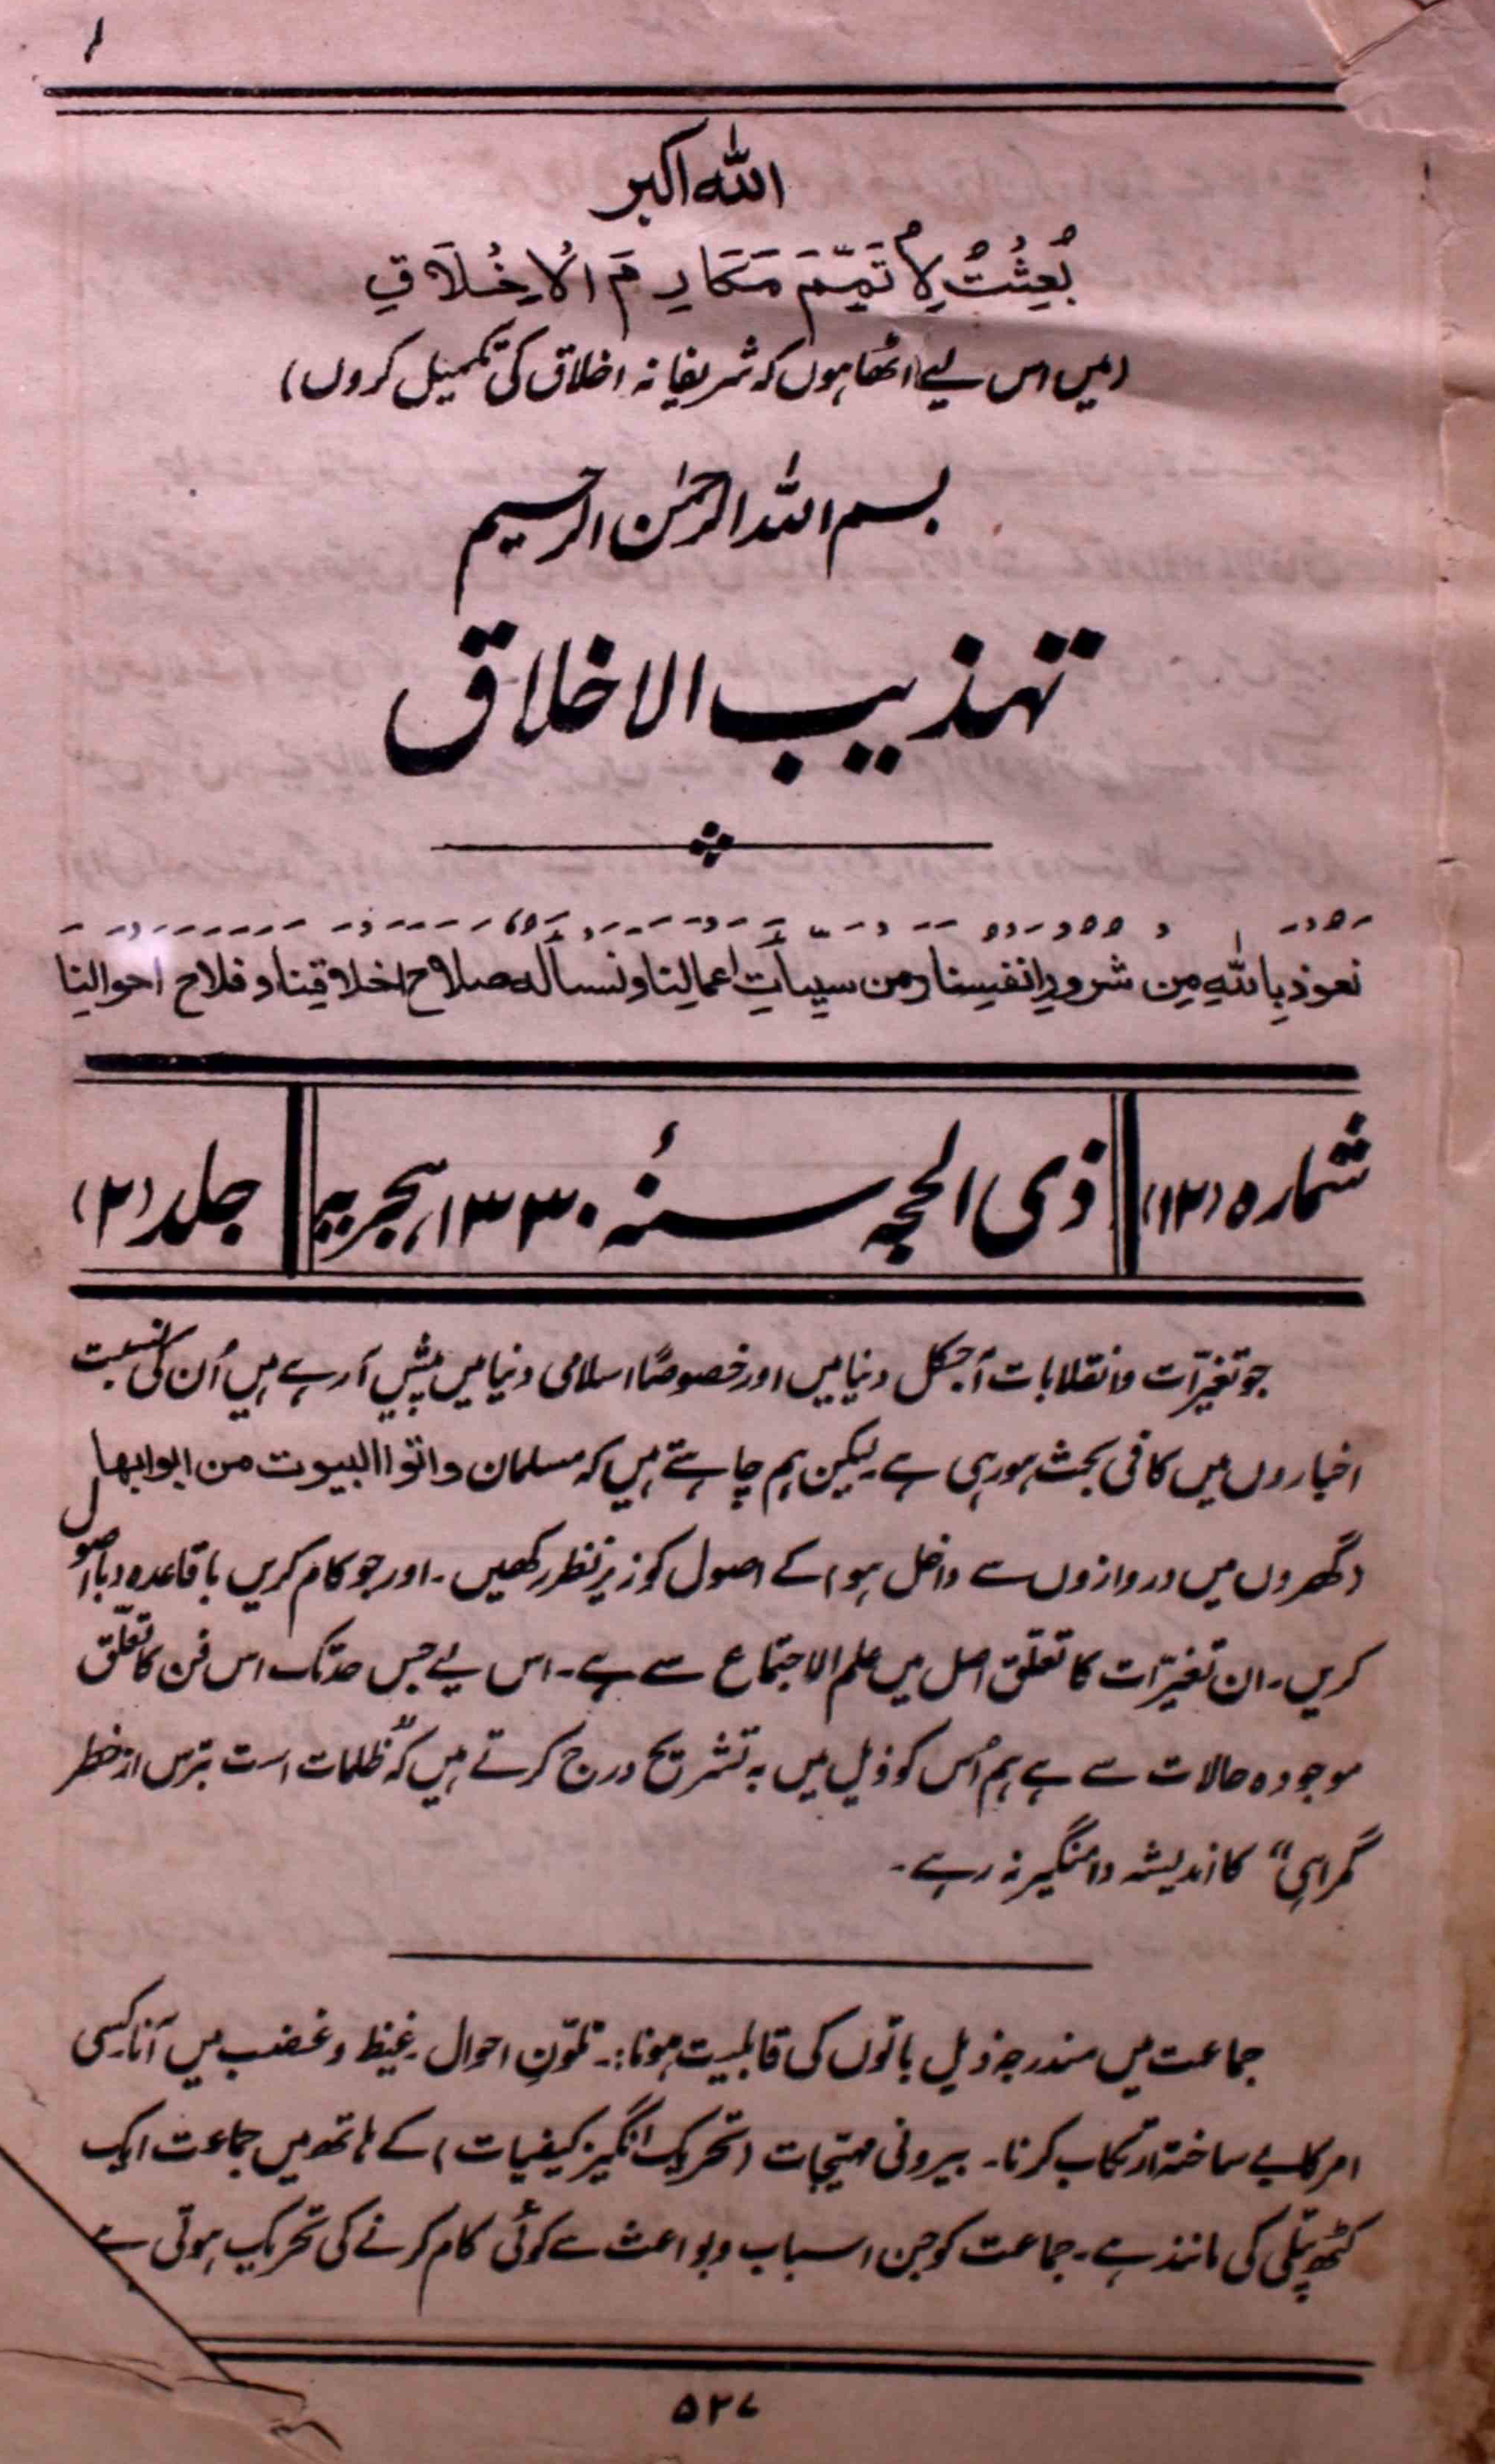 tahzibul-akhlaq-aligarh-shumara-number-012-abdullah-al-emadi-magazines